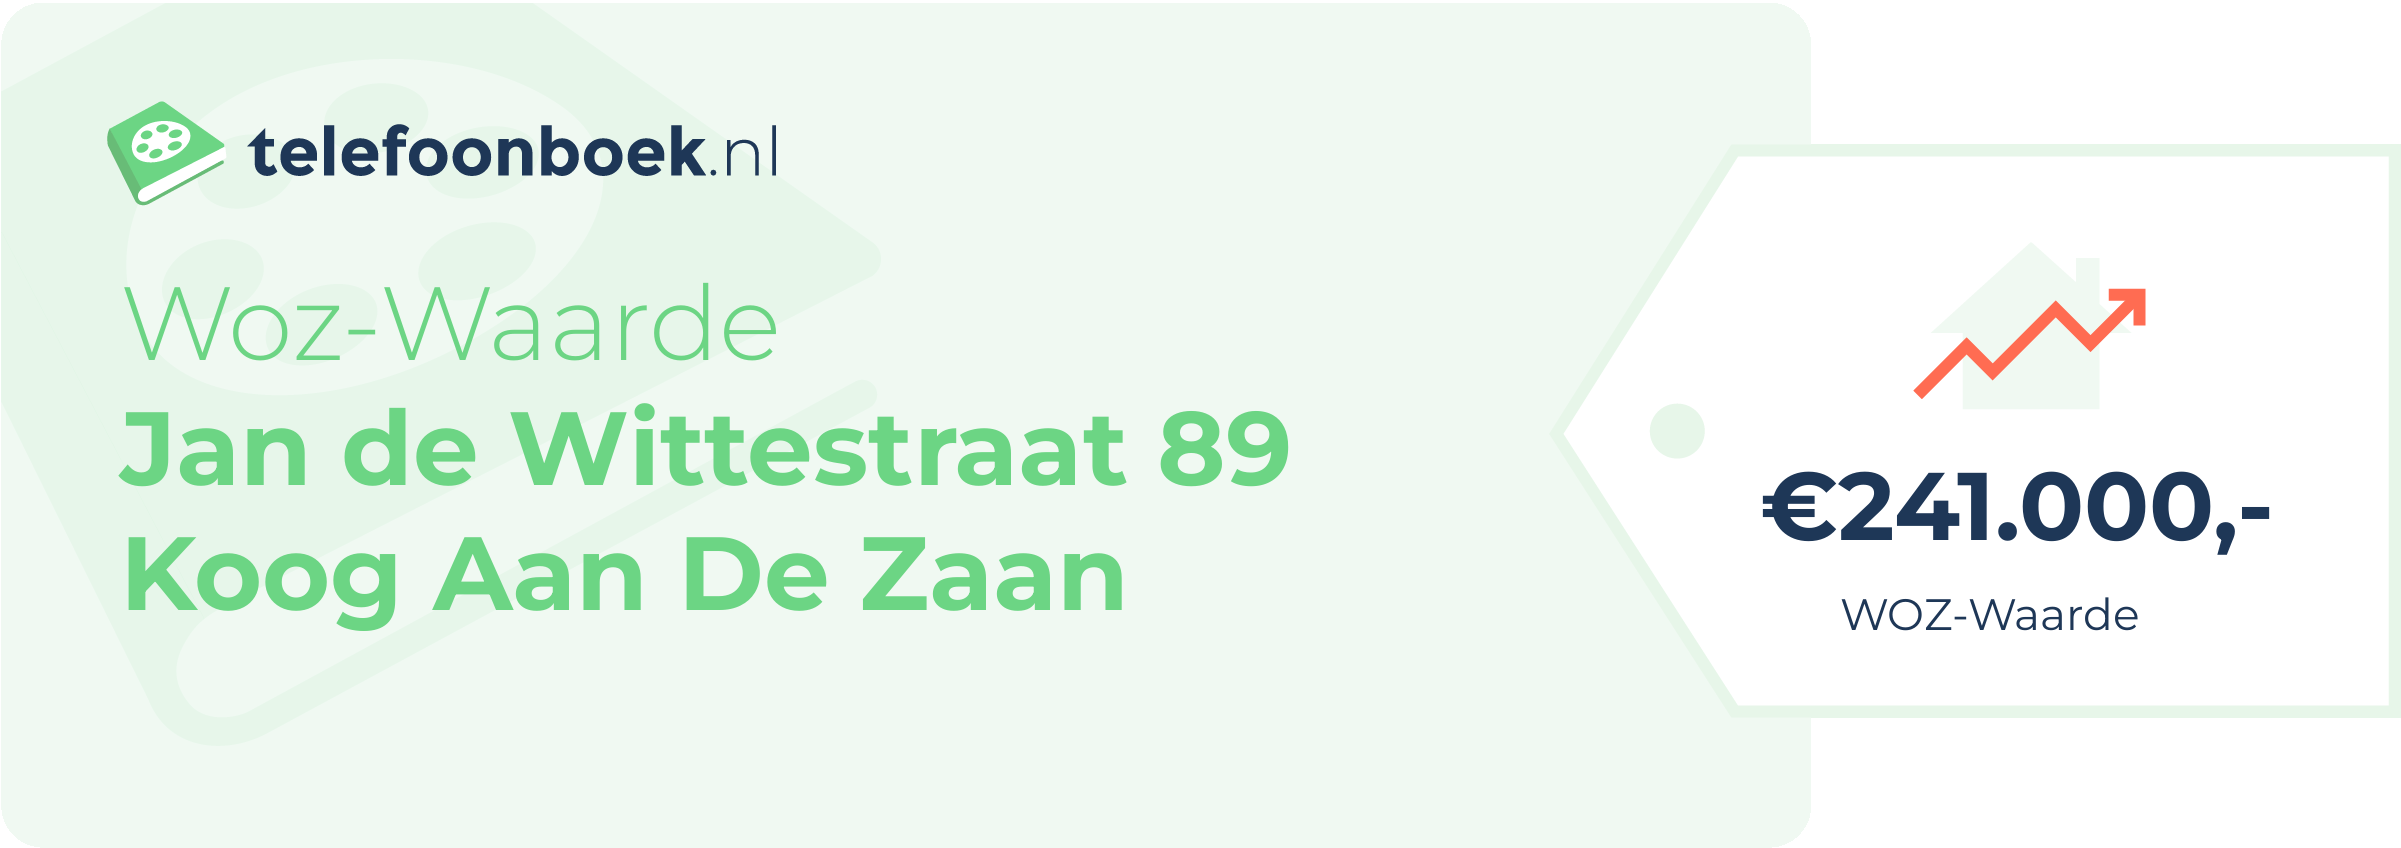 WOZ-waarde Jan De Wittestraat 89 Koog Aan De Zaan